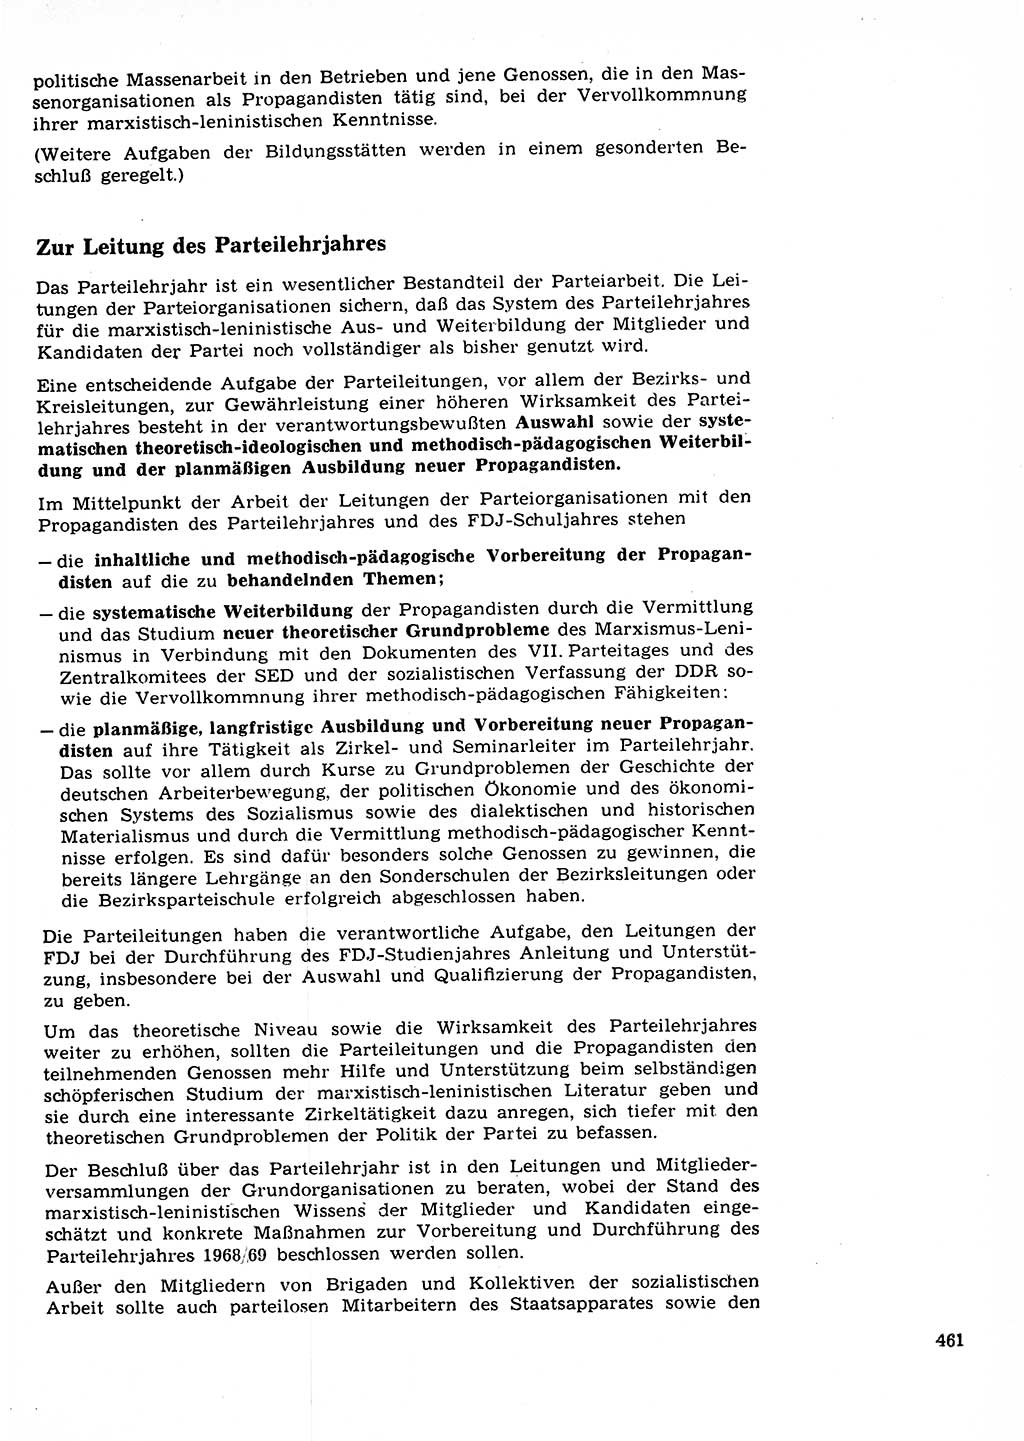 Neuer Weg (NW), Organ des Zentralkomitees (ZK) der SED (Sozialistische Einheitspartei Deutschlands) für Fragen des Parteilebens, 23. Jahrgang [Deutsche Demokratische Republik (DDR)] 1968, Seite 461 (NW ZK SED DDR 1968, S. 461)